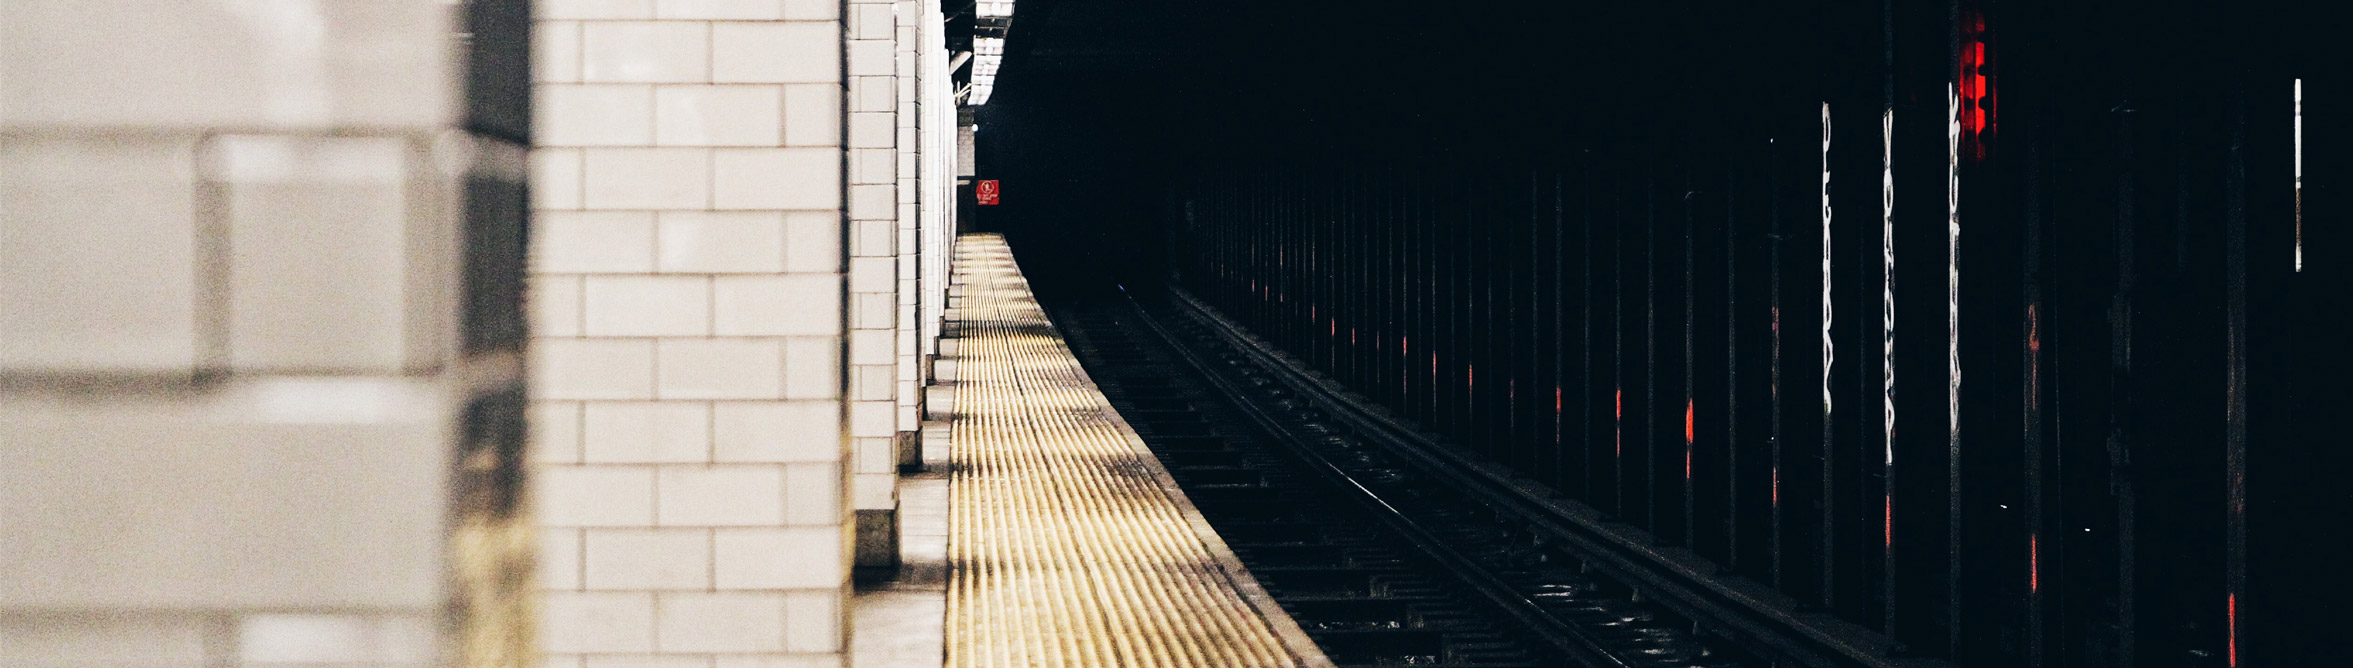 нью-йоркский туннель